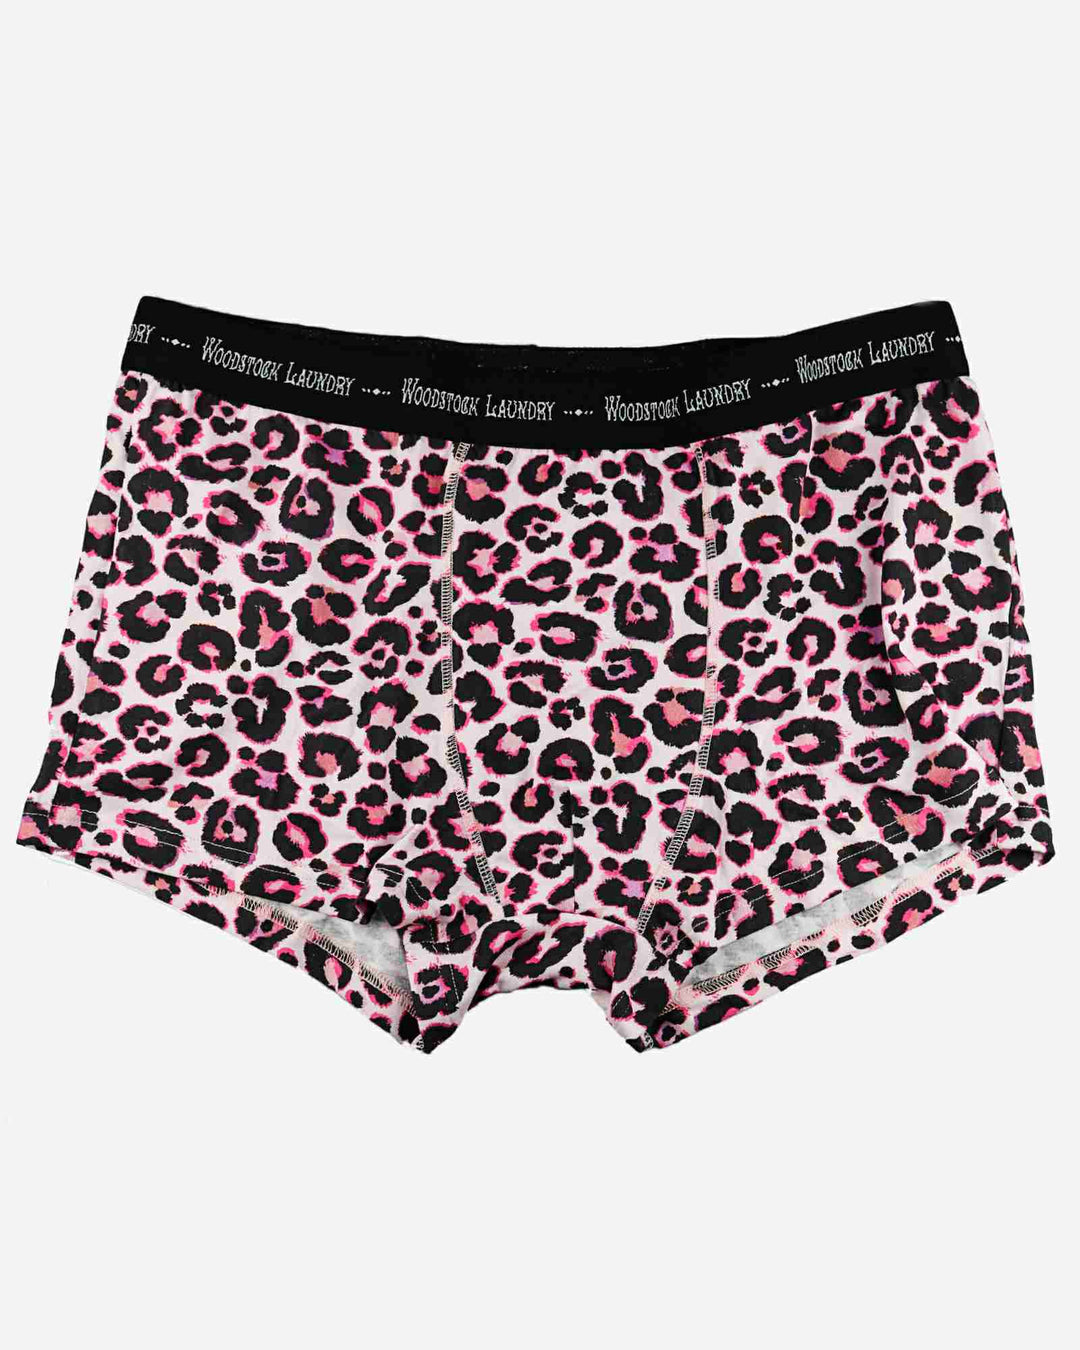 Mens boxer briefs - leopard pink